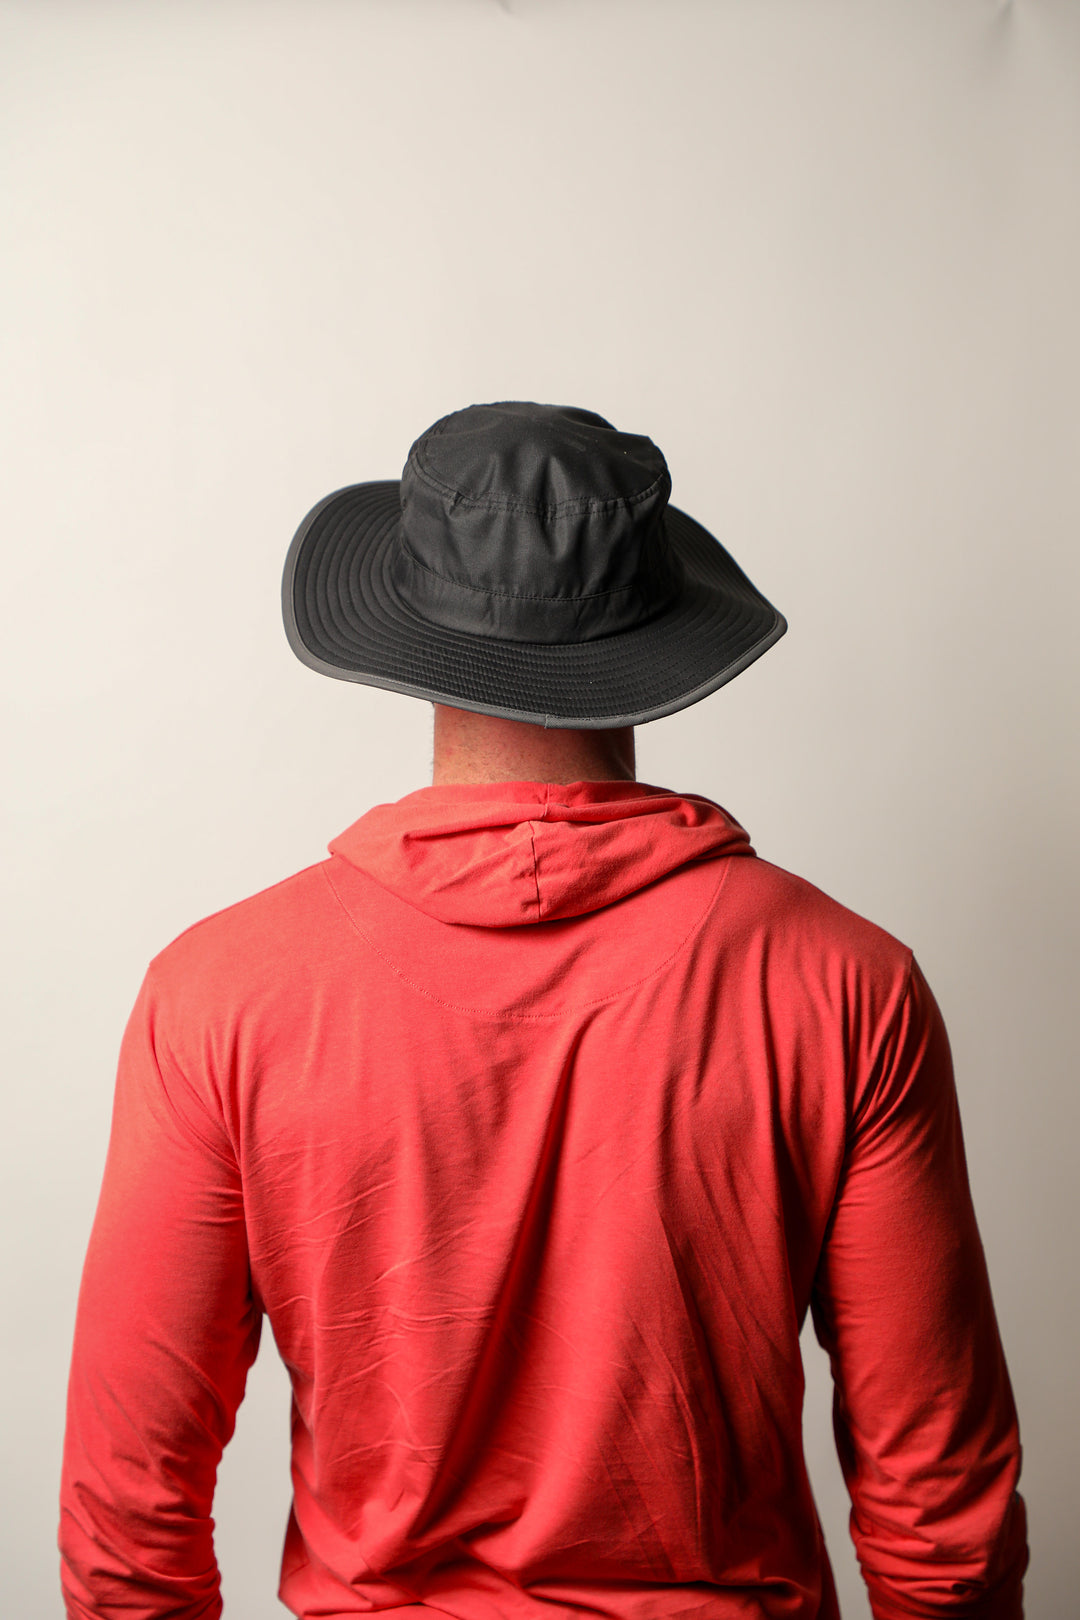 Pathfinder UPF 50+ Wide Brim Boonie Hat, Men's and Women's - Rayward Apparel